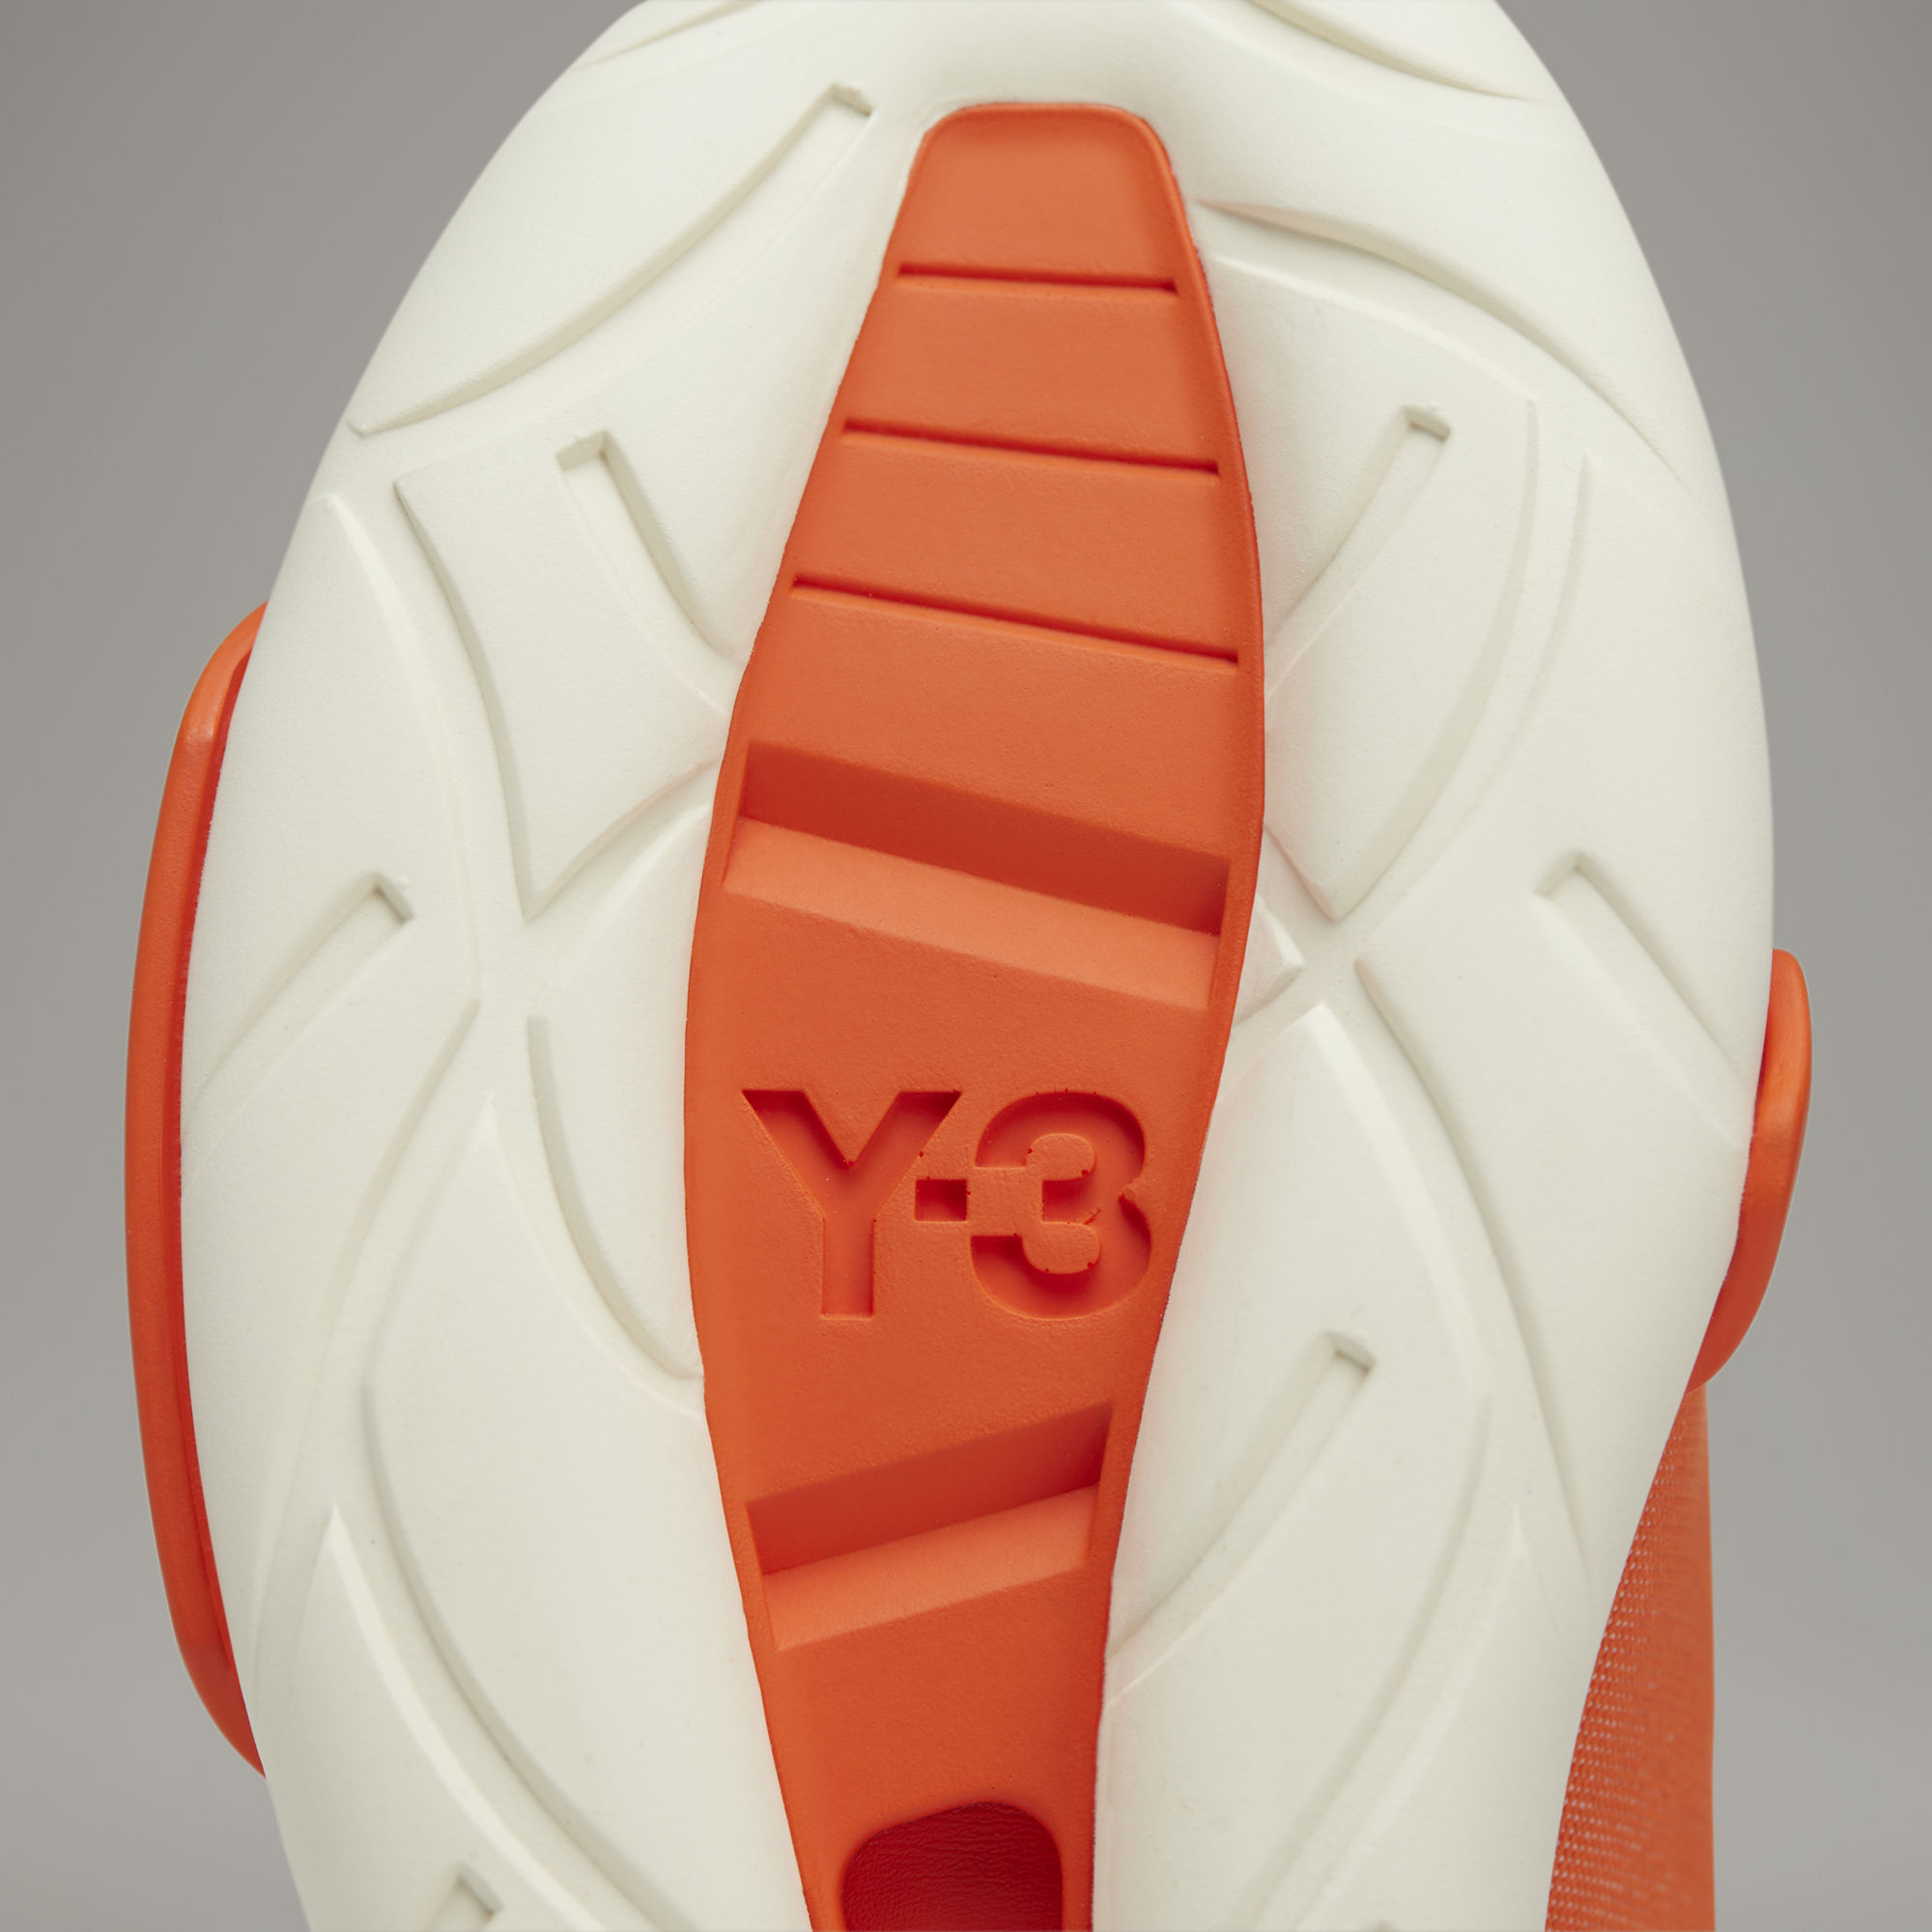 Y-3 QASA HIGH - 橙色| 男子| adidas(愛迪達)香港官方網上商店